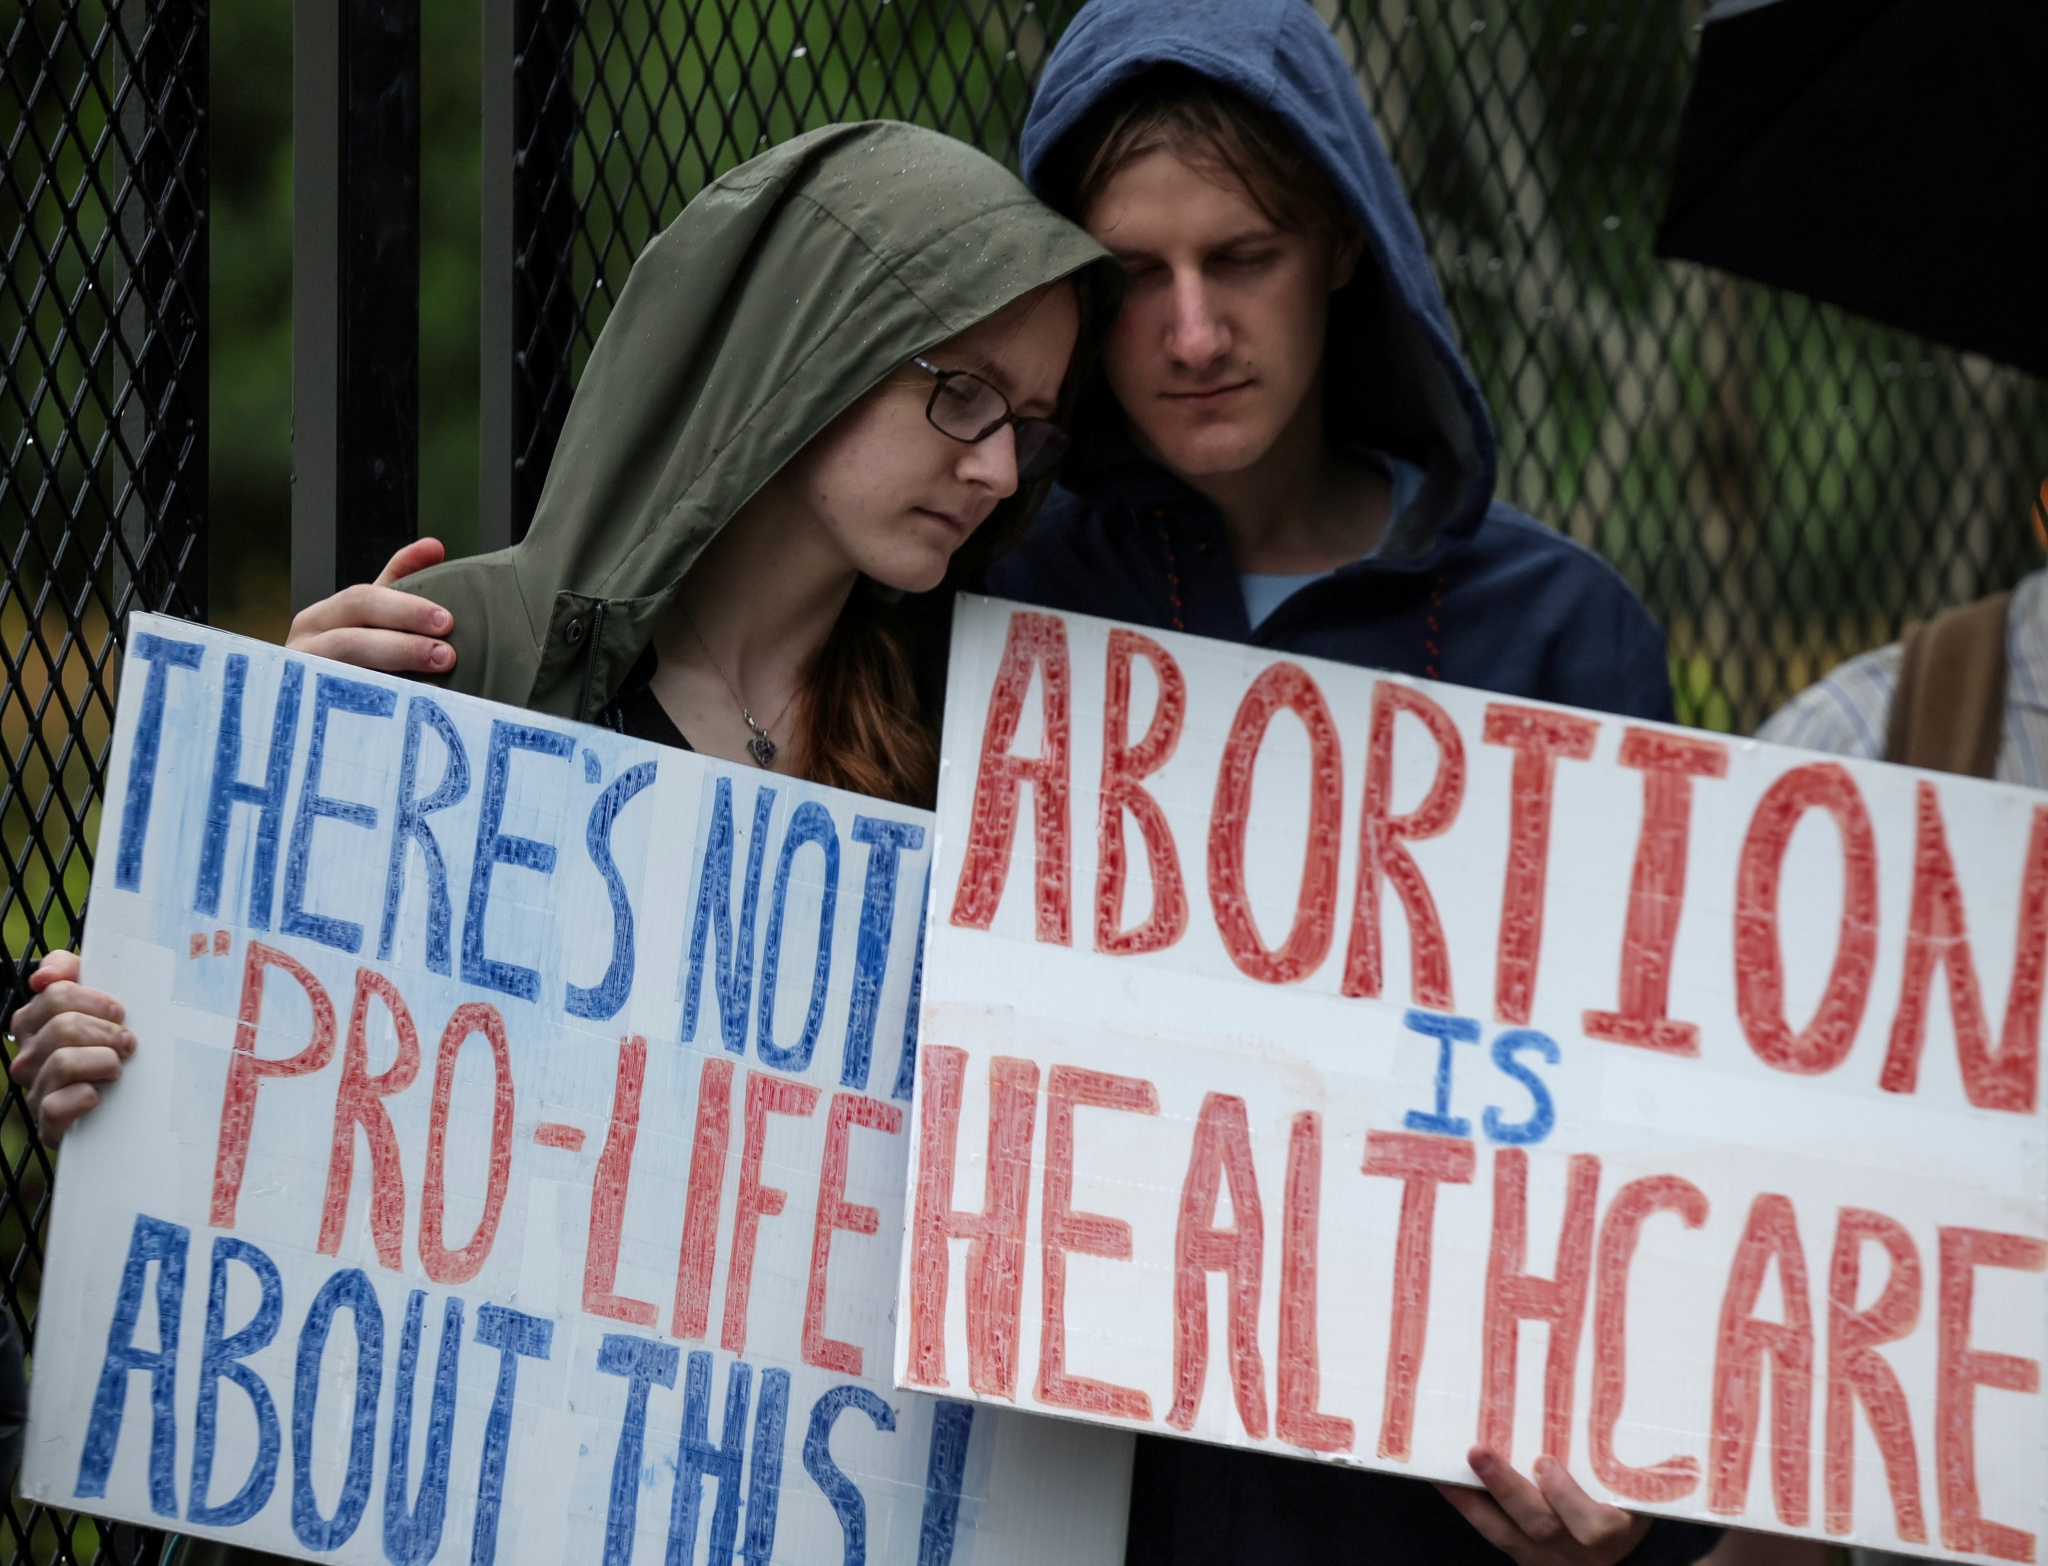 “最严苛堕胎法”惹众怒 美国多地爆发抗议活动